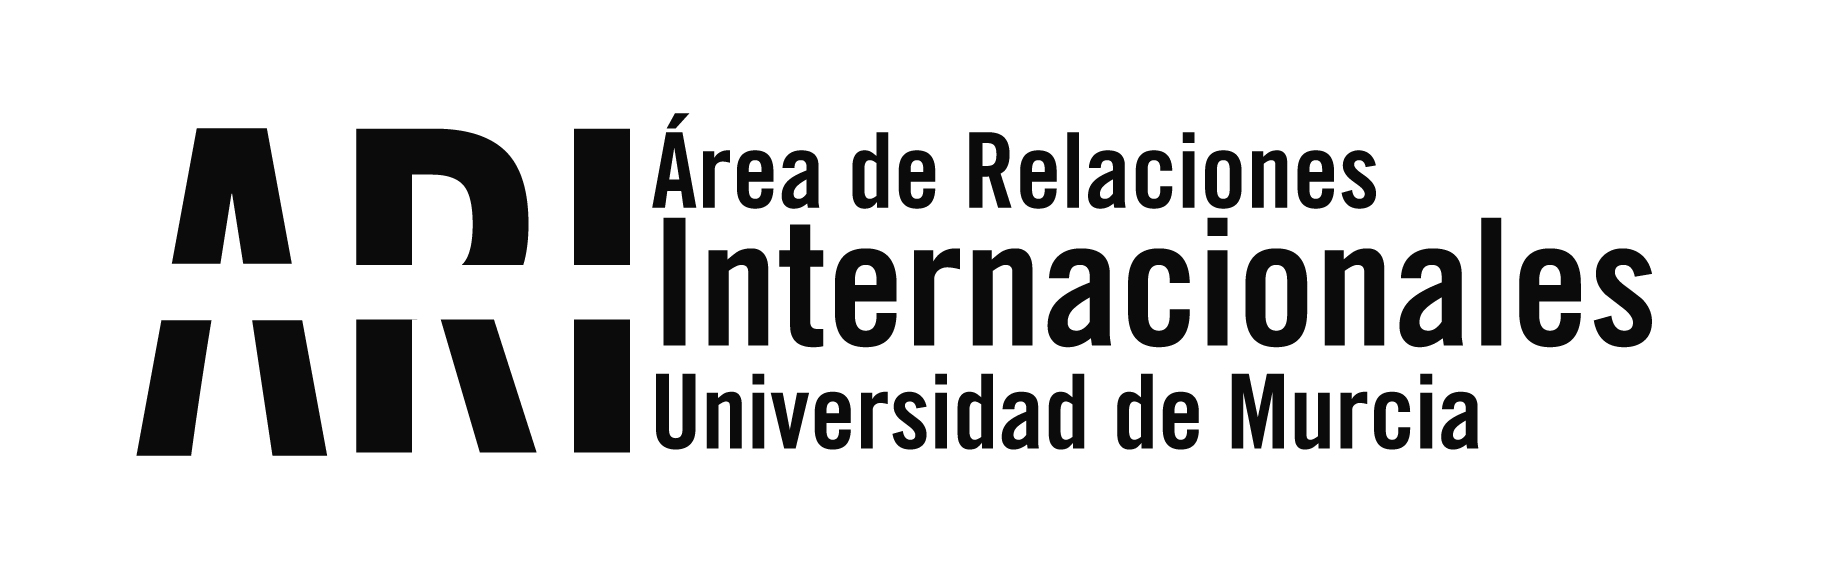 Reunión anual de becarios Fulbright de España y Andorra en la Universidad de Murcia - Área de Relaciones Internacionales